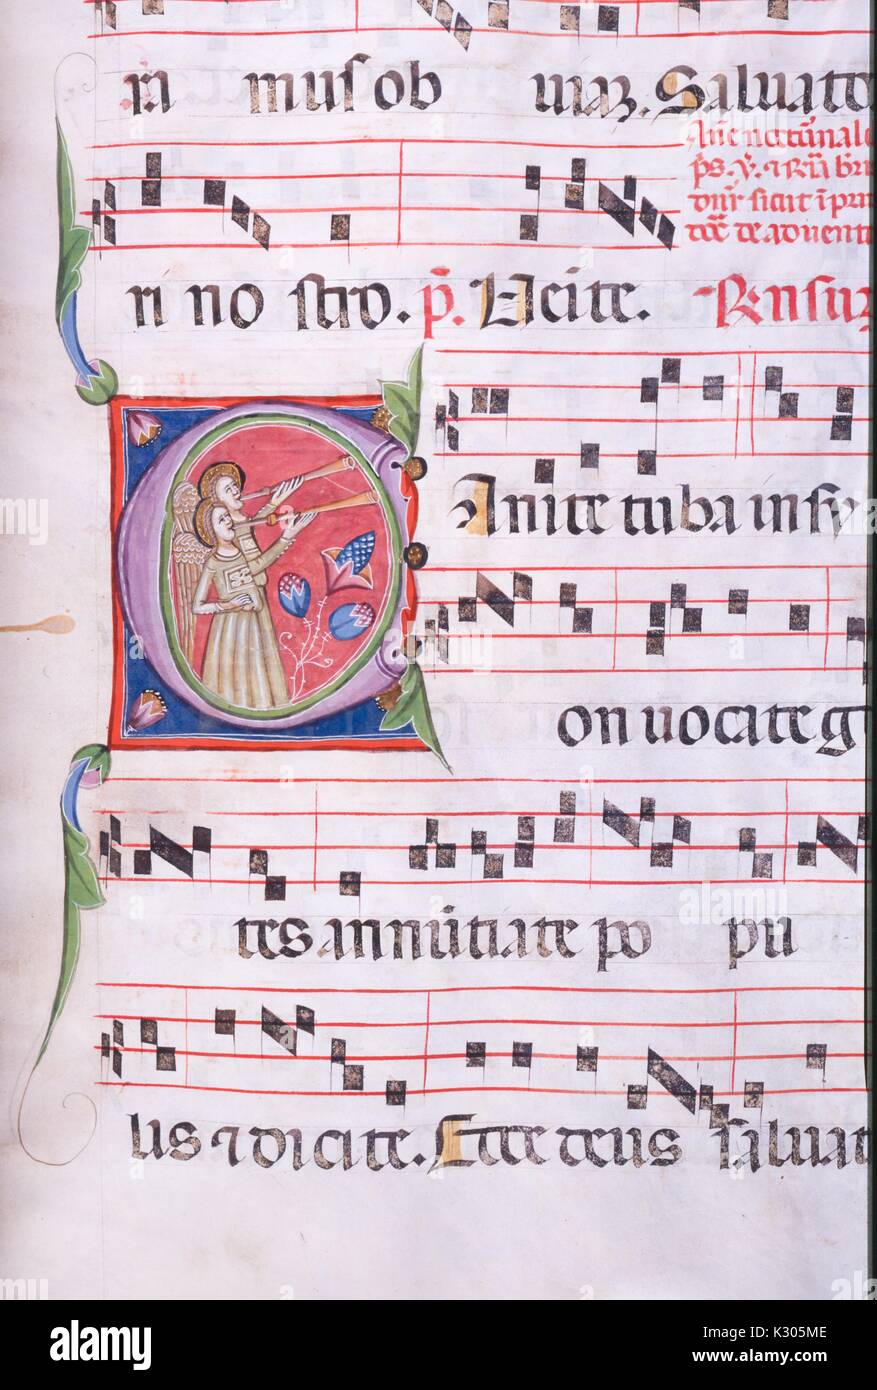 Bilderhandschrift Seite von Song mit Engeln Hörner spielen, von den "Incipit antiphonarium nocturnum", aus dem 15. Jahrhundert Latein von der Katholischen Kirche, 2013 antiphonar. Stockfoto